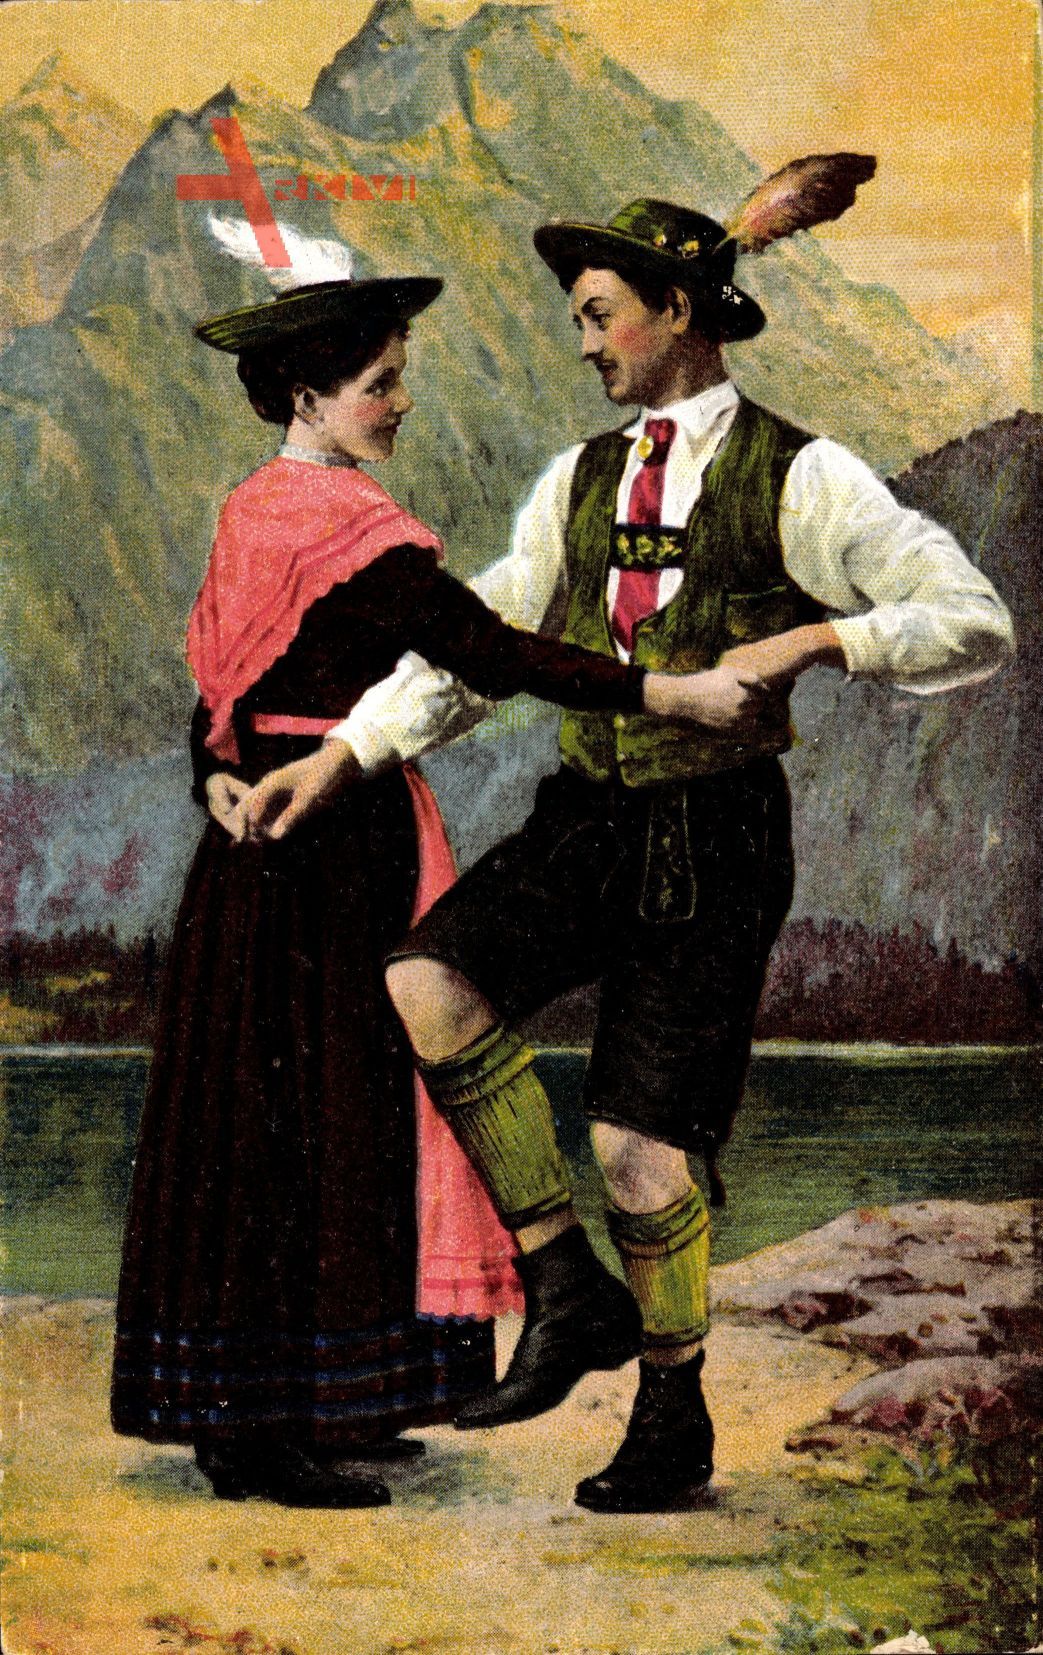 Zwei Bayern in Landestrachten beim Tanzen, Paartanz, Lederhosen